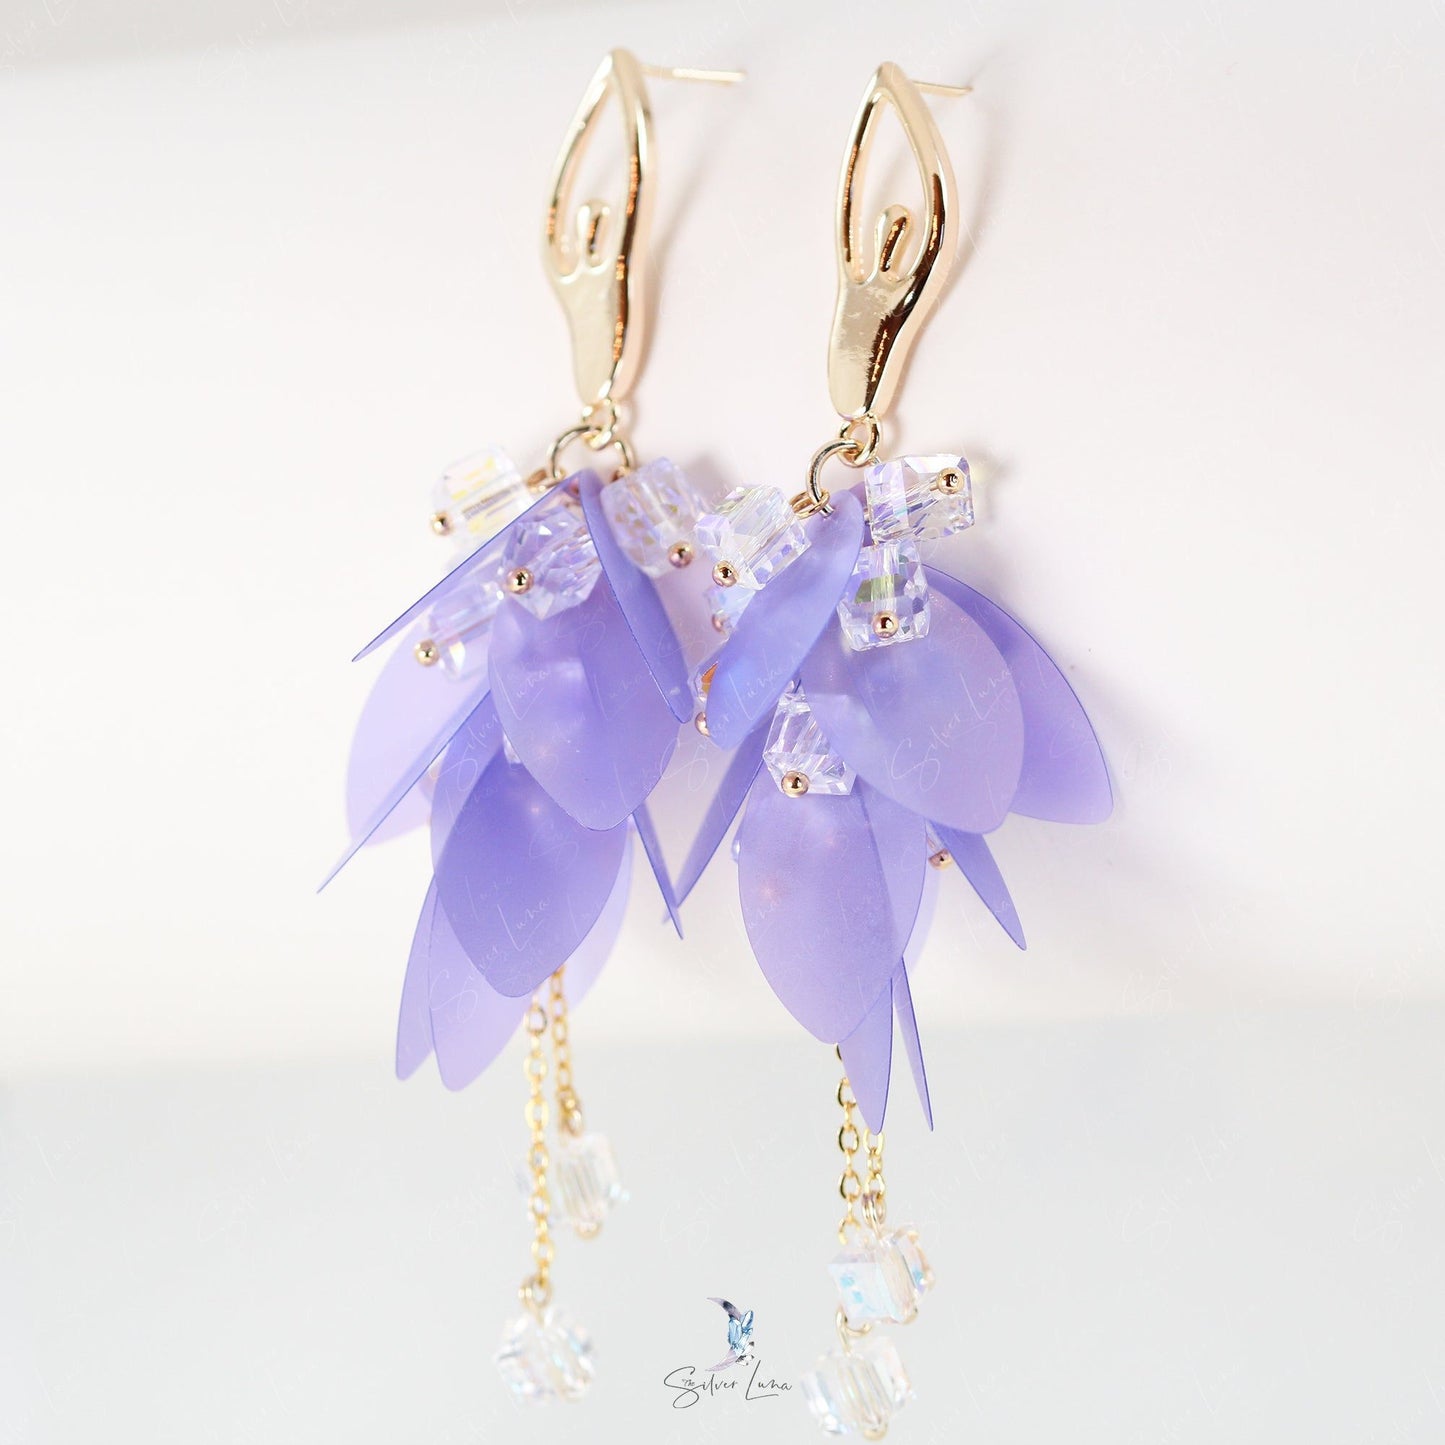 Ballet dancer girl gold plated dangle earrings